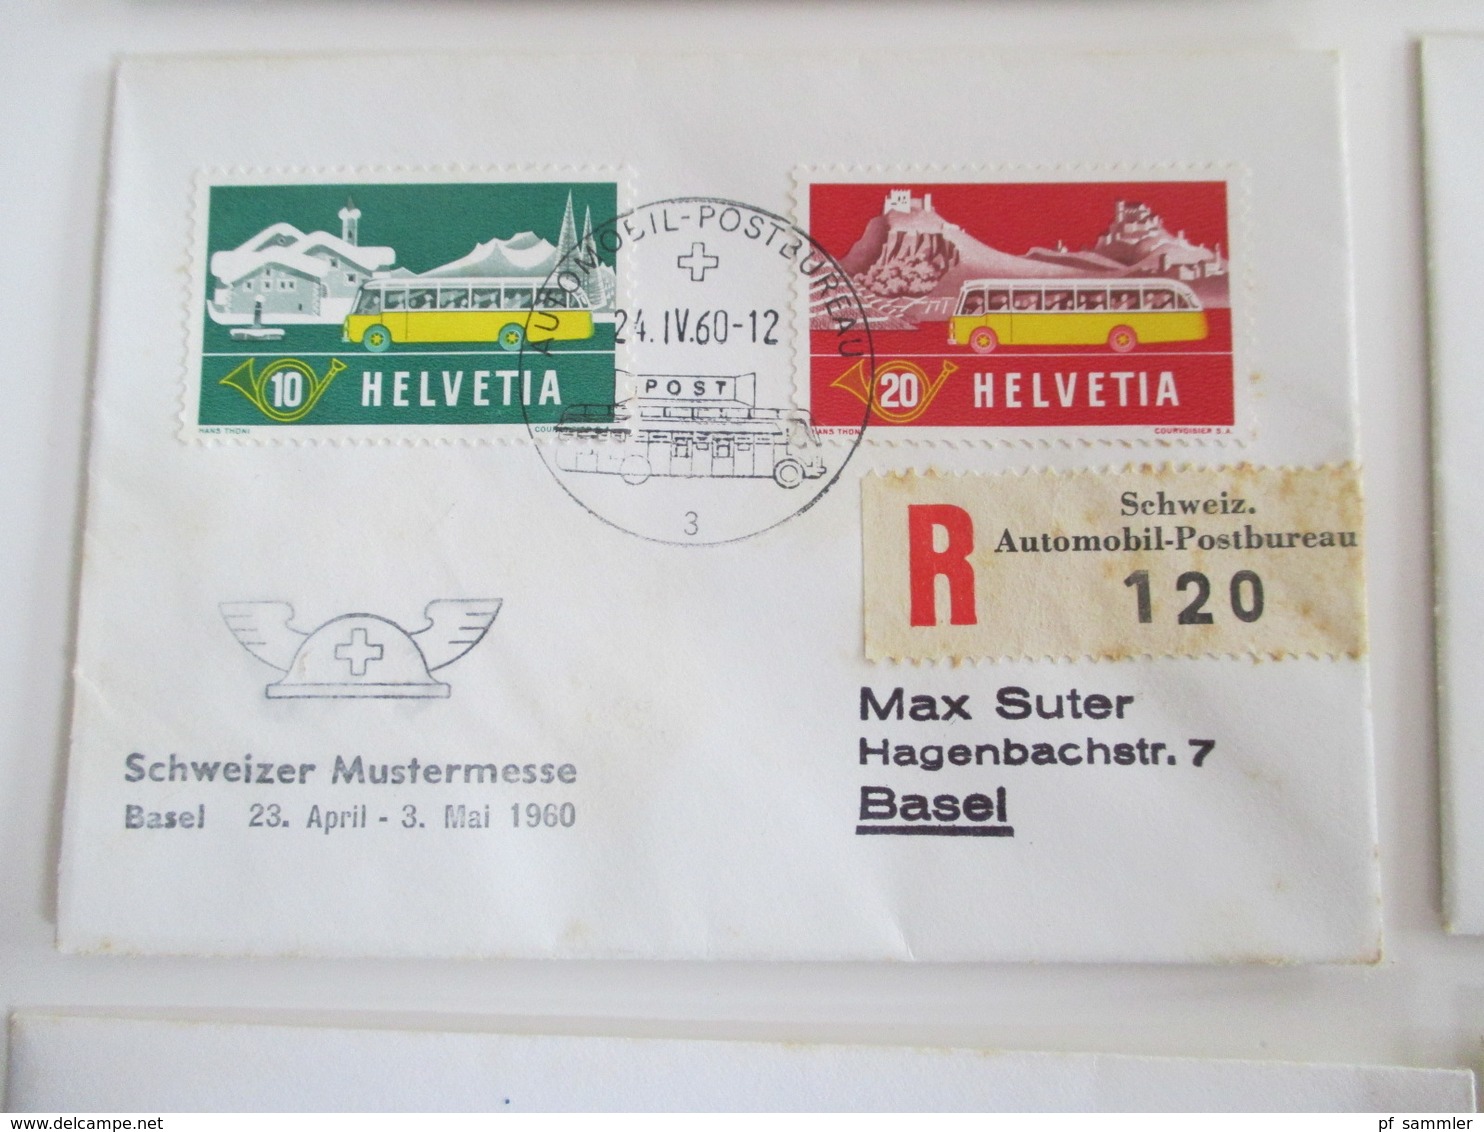 Schweiz 1960er Jahre FDC / Sonderstempel / Sonderbelege insgesamt 260 Stück! Auch kleinformatige Umschläge!